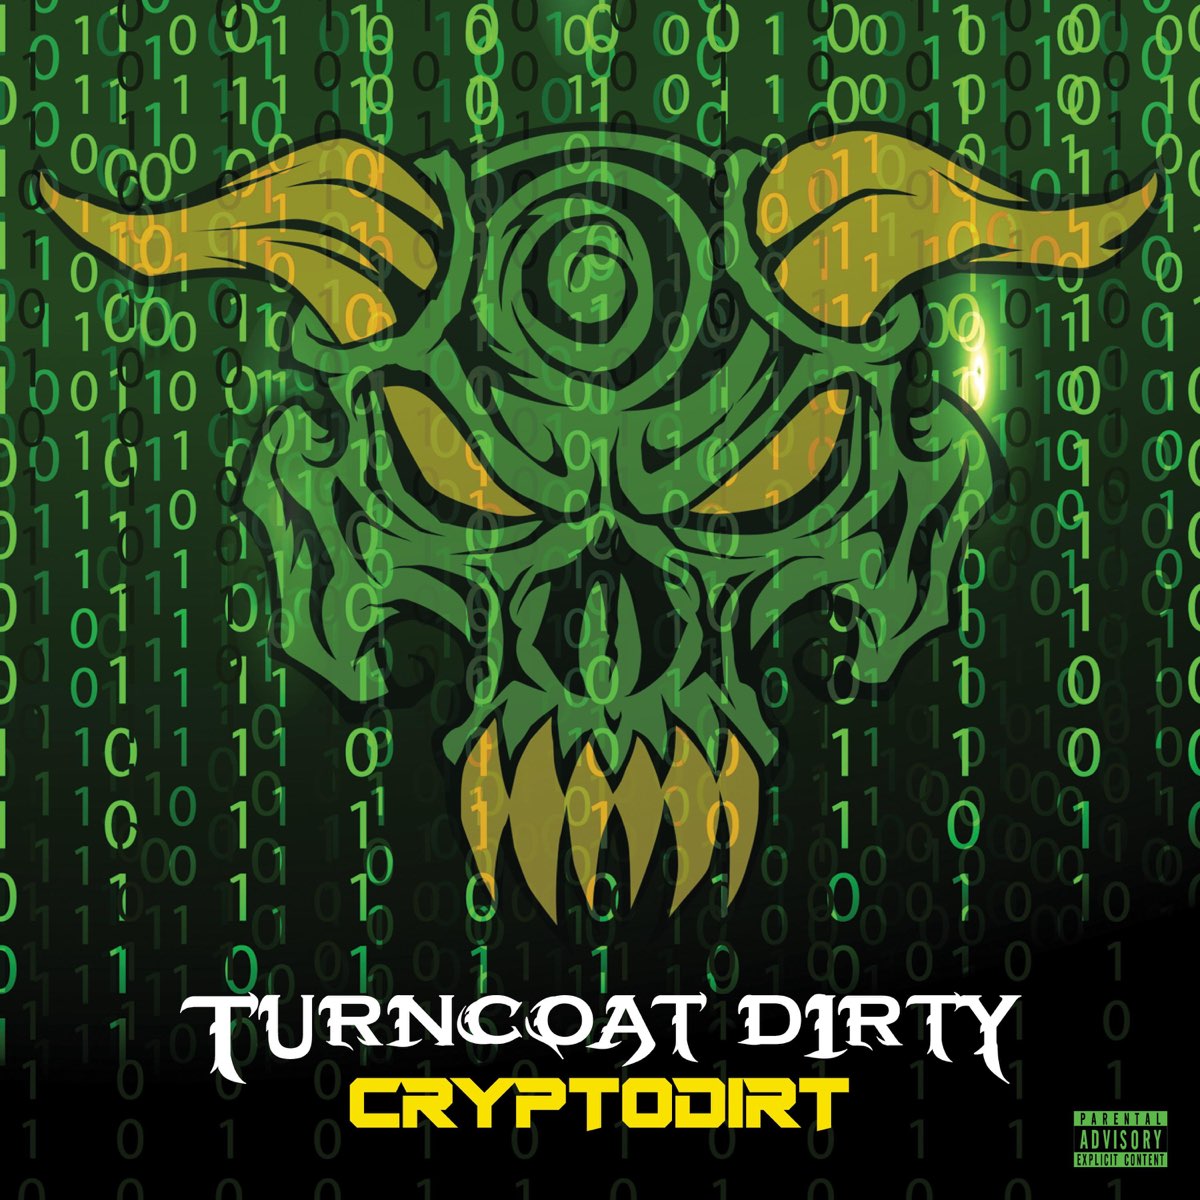 Turncoat. Turncoats MC. Boondox группа. Turn Coat Dirty - cryptodirt. Turncoat - Elizaye.